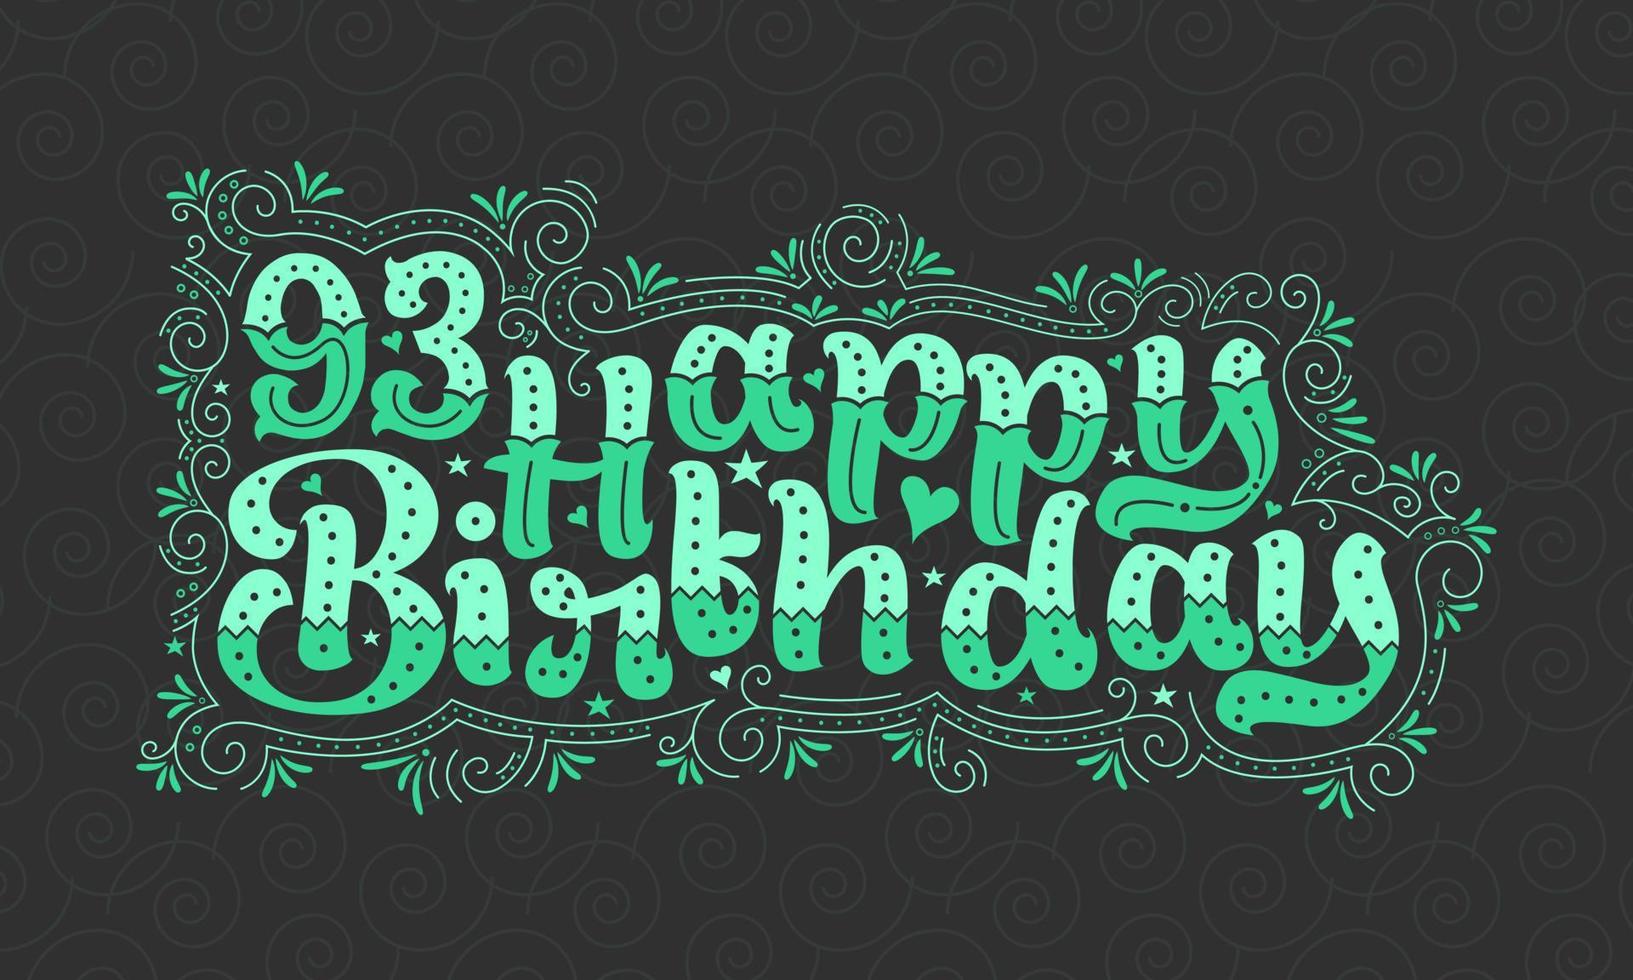 93. Happy Birthday Schriftzug, 93 Jahre Geburtstag schönes Typografie-Design mit grünen Punkten, Linien und Blättern. vektor